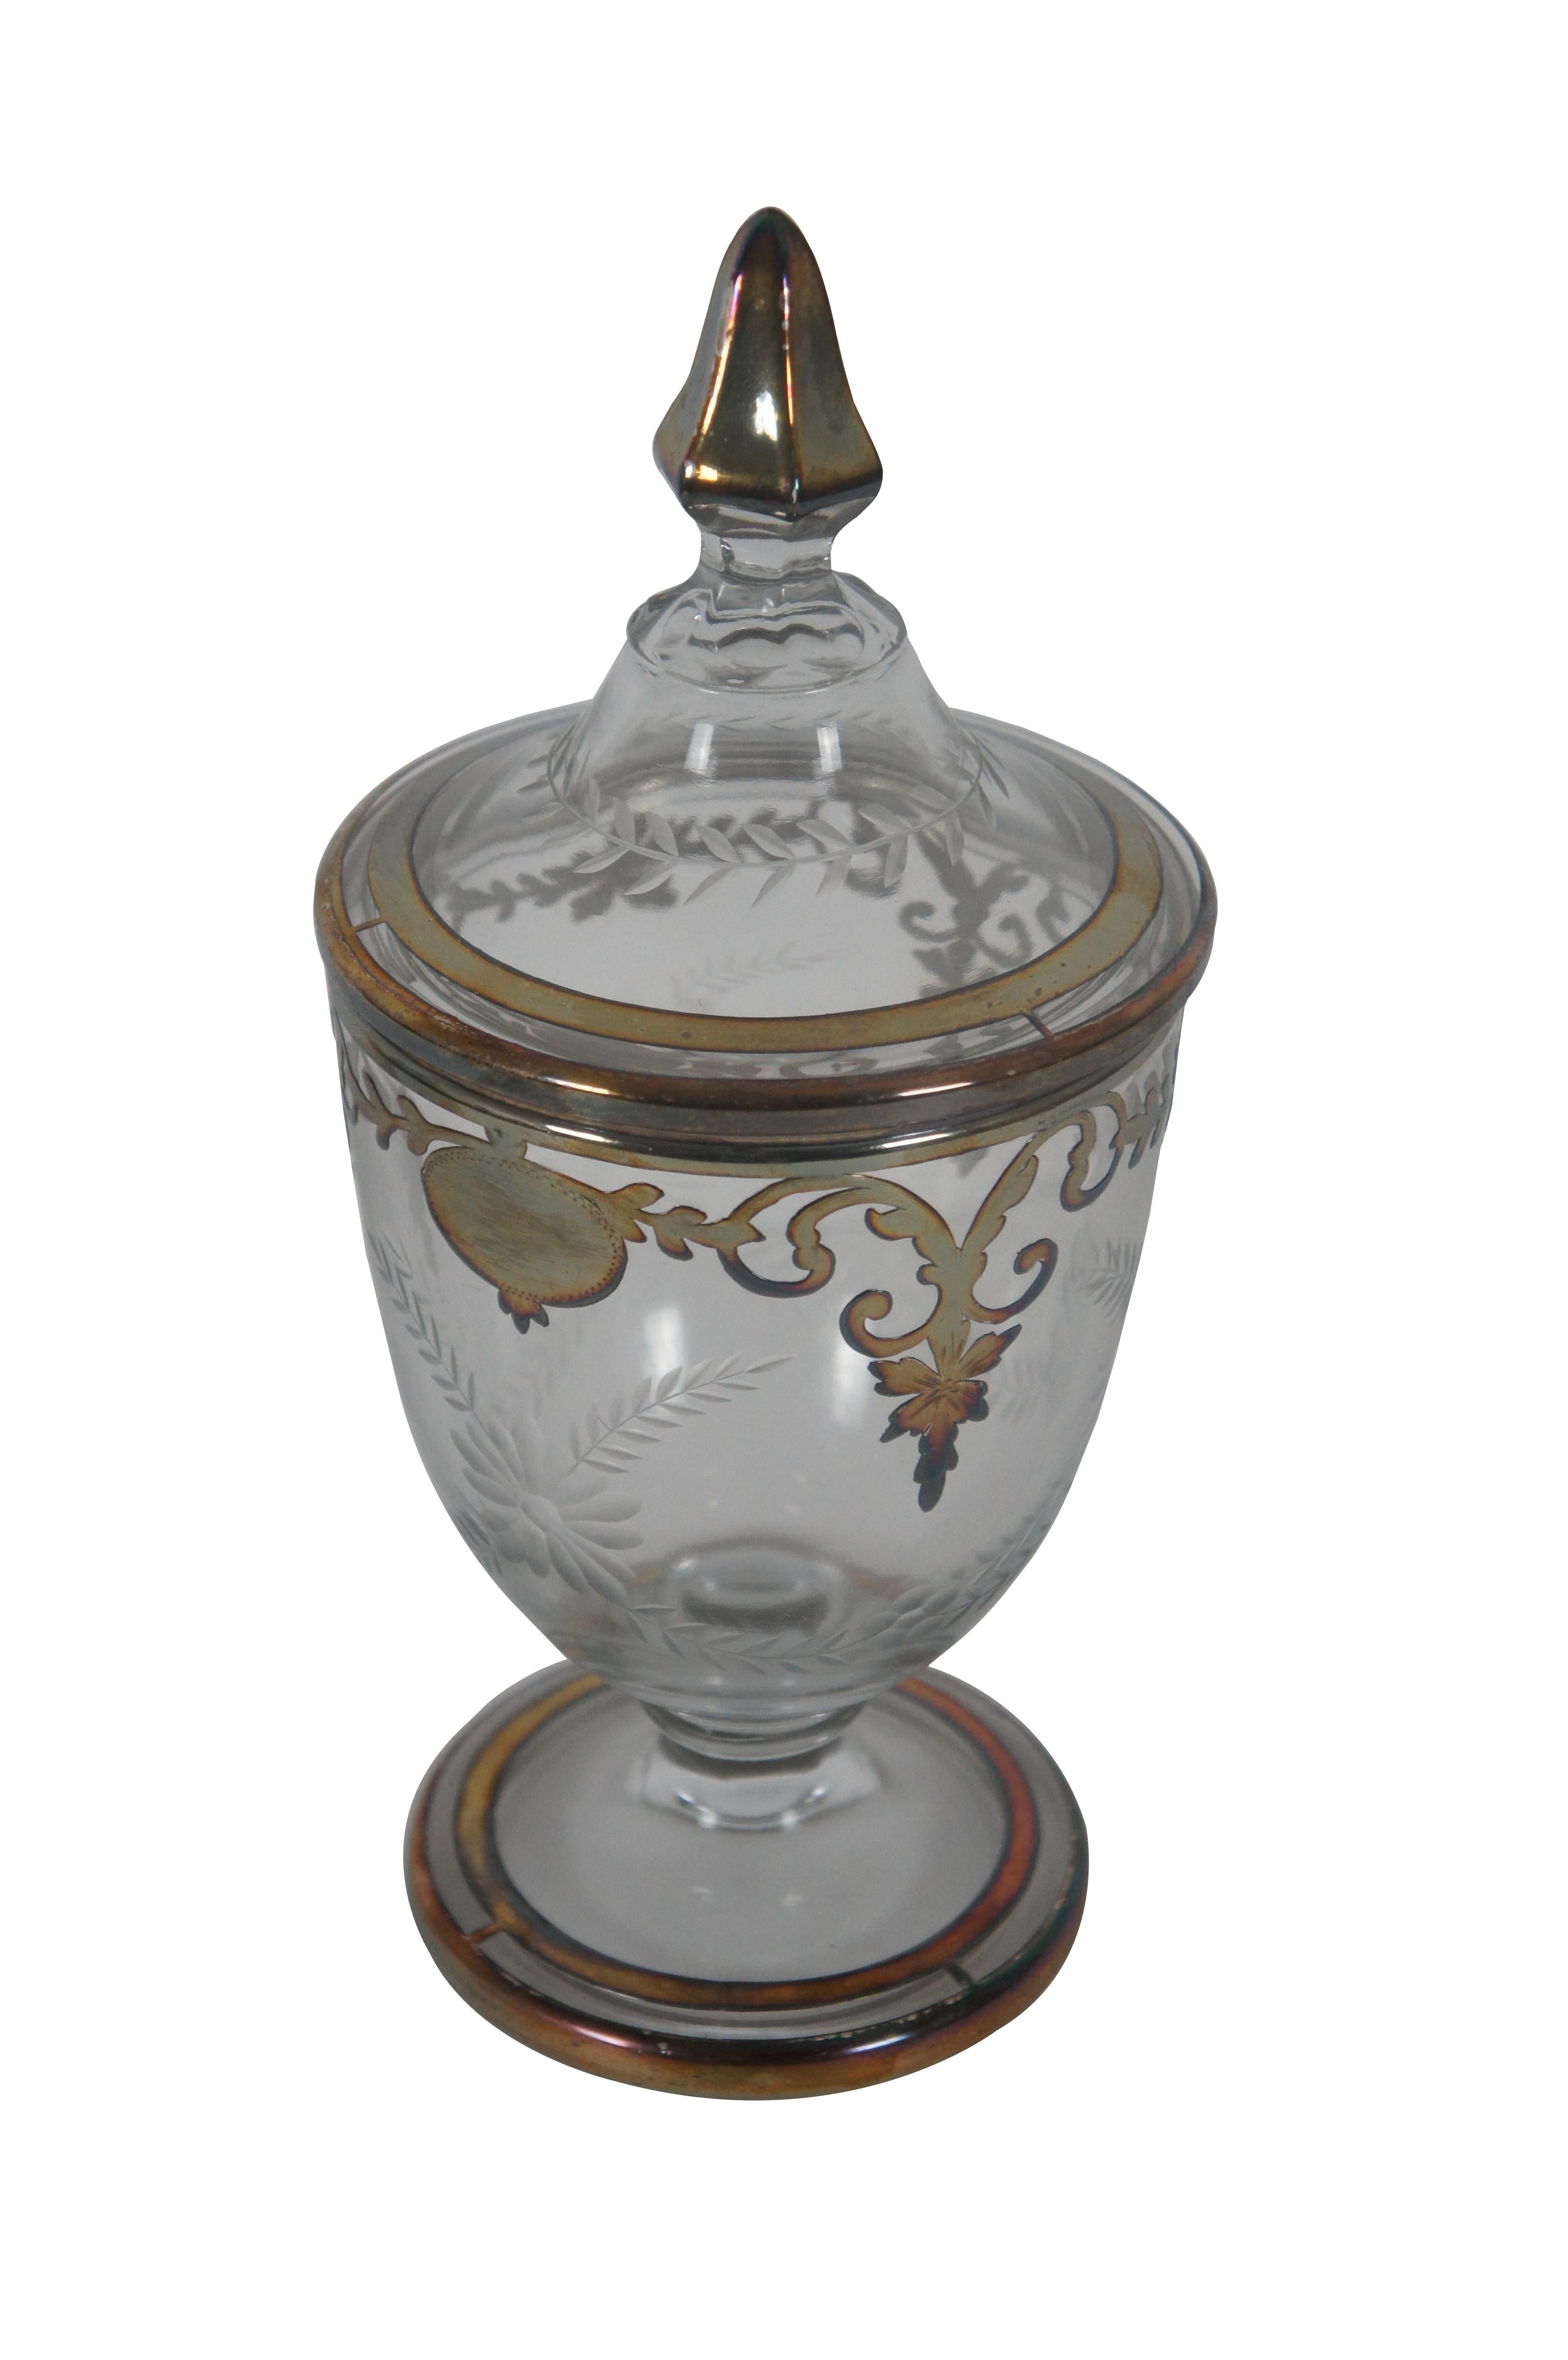 Ancienne bonbonnière / compote en verre pressé et gravé Heisey, en forme d'urne trophée avec une base sur piédestal, un recouvrement baroque en argent sterling et un couvercle avec fleuron.

Dimensions :
4,25